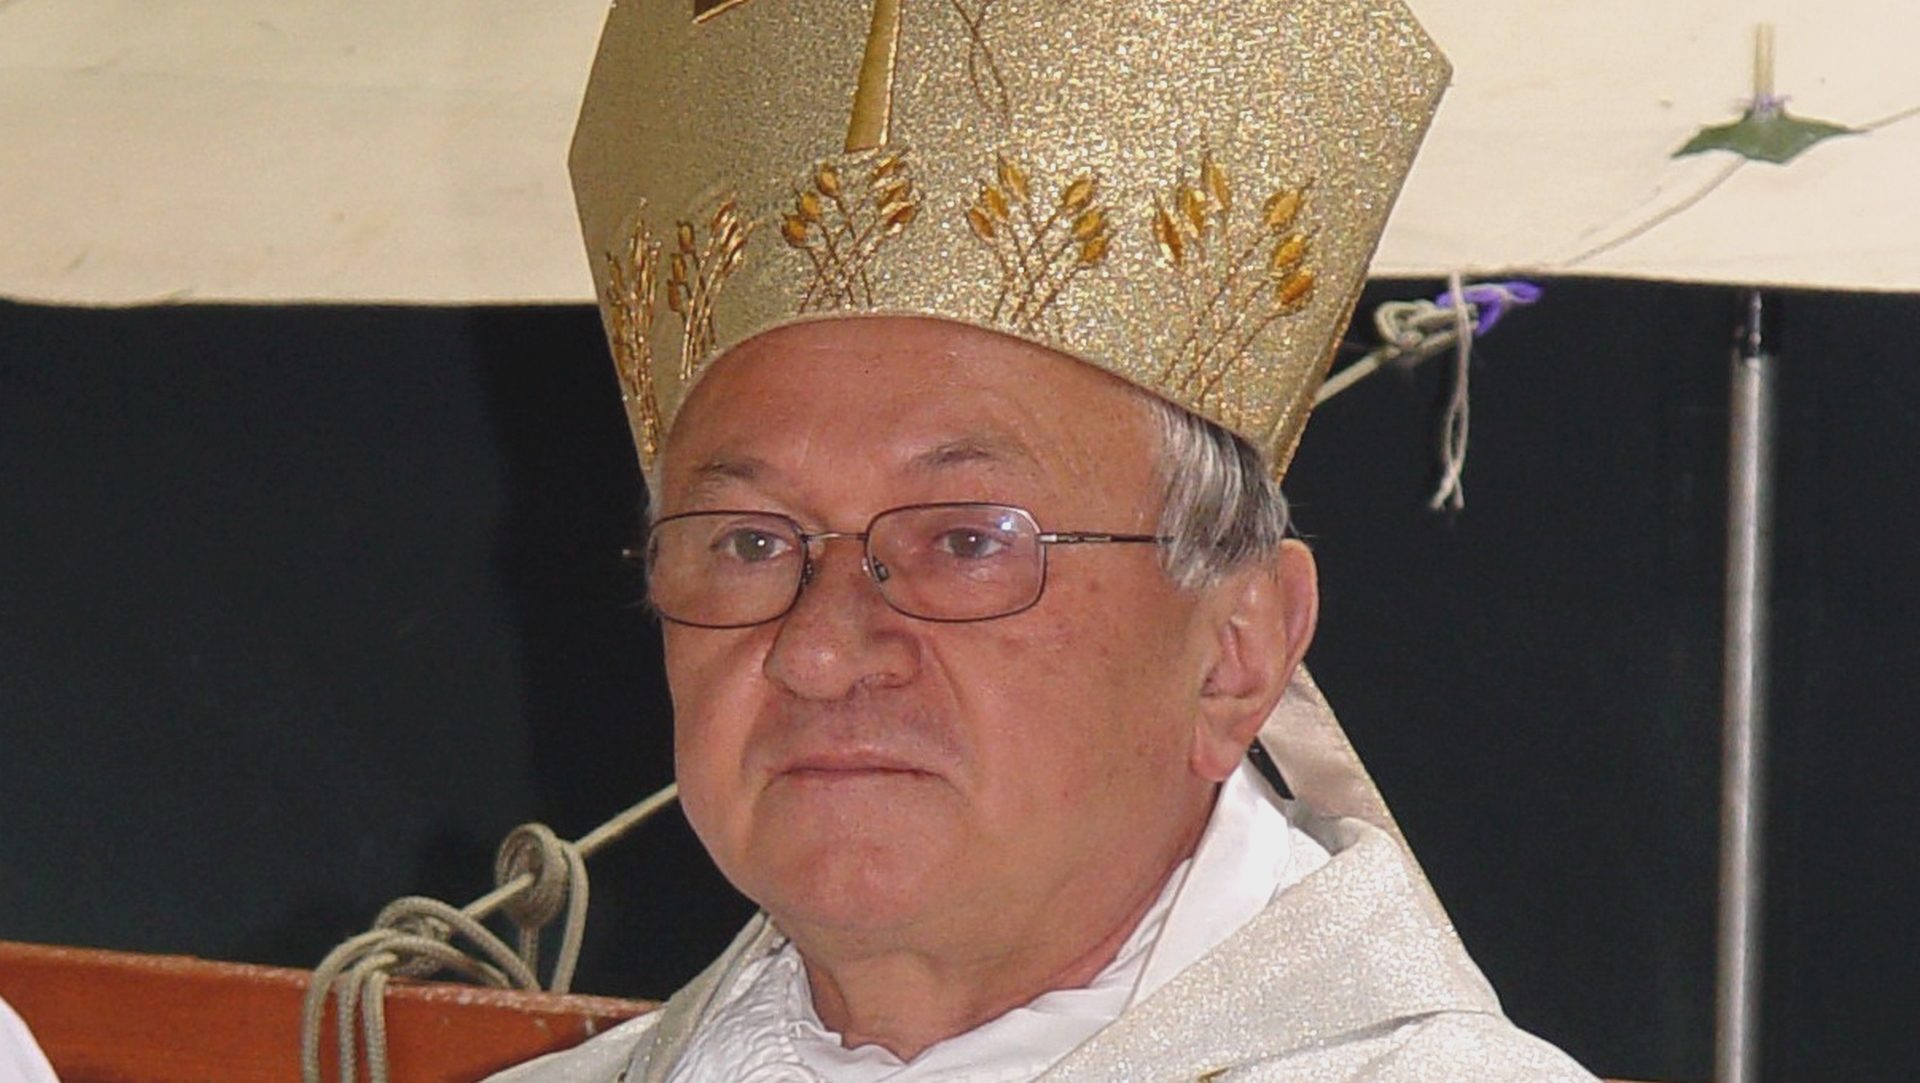 Le Polonais Mgr Zygmunt Zimowski, président du Conseil pontifical pour la pastorale de la santé, est décédé le 13 juillet 2016 (photo wikimedia commons JAROSŁAW ROLAND KRUK CC BY-SA 2.0)